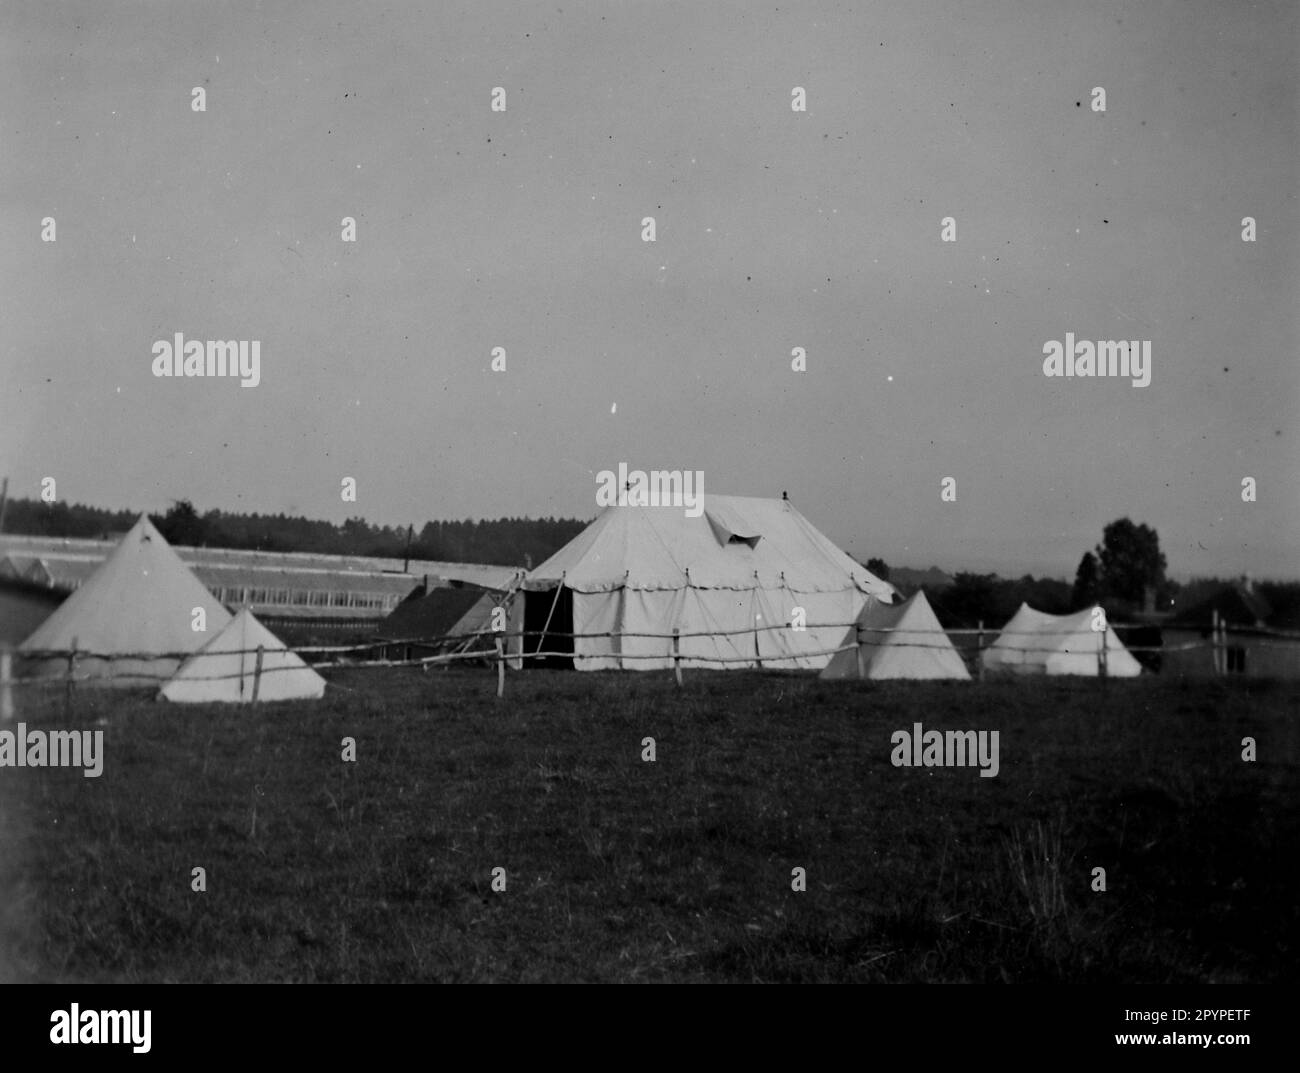 Das Festzelt und ein paar Zelte auf dem Campingplatz, c1930. Aus einem einzigartigen Fotoalbum, das von K.W. zusammengestellt wurde Parkhurst, einem Landlager in Bolney (einer landwirtschaftlichen Gemeinde), West Sussex, England, das zwischen 1928 und 1930 ein regelmäßiges Ziel für eine Gruppe junger Männer war, darunter Mr. Parkhurst. Dies geschah während der Zeit der Großen Depression. Stockfoto